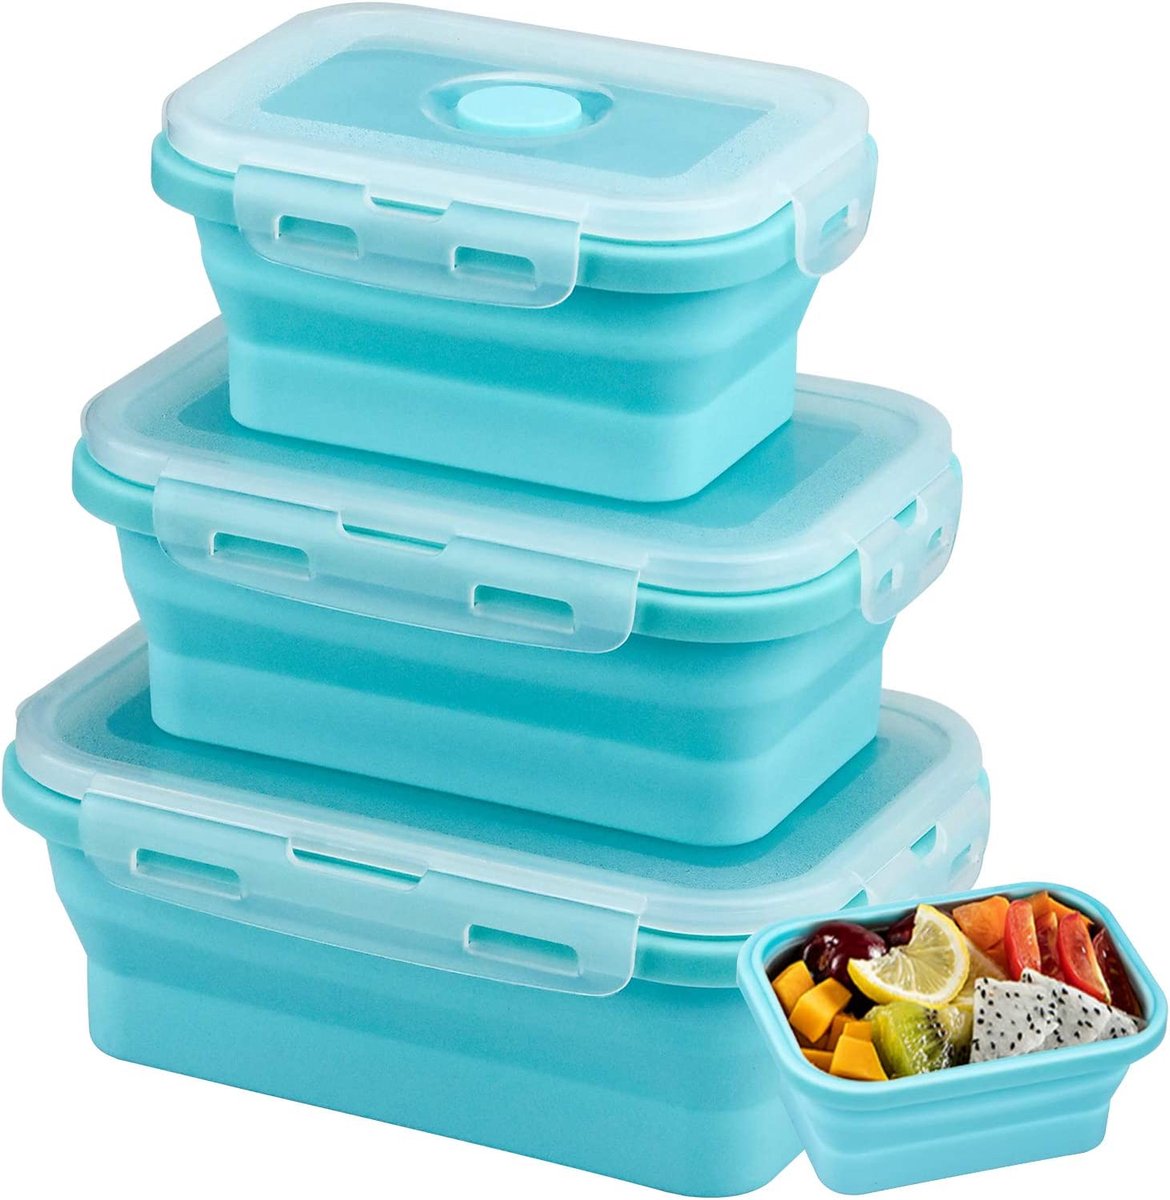 Opvouwbare voedselopbergdozen, set van 3, siliconen lunchboxen, herbruikbare containers, blauwe lunchbox, rechthoekige opbergdozen voor magnetrons, koelkasten, 350/500/800 ml